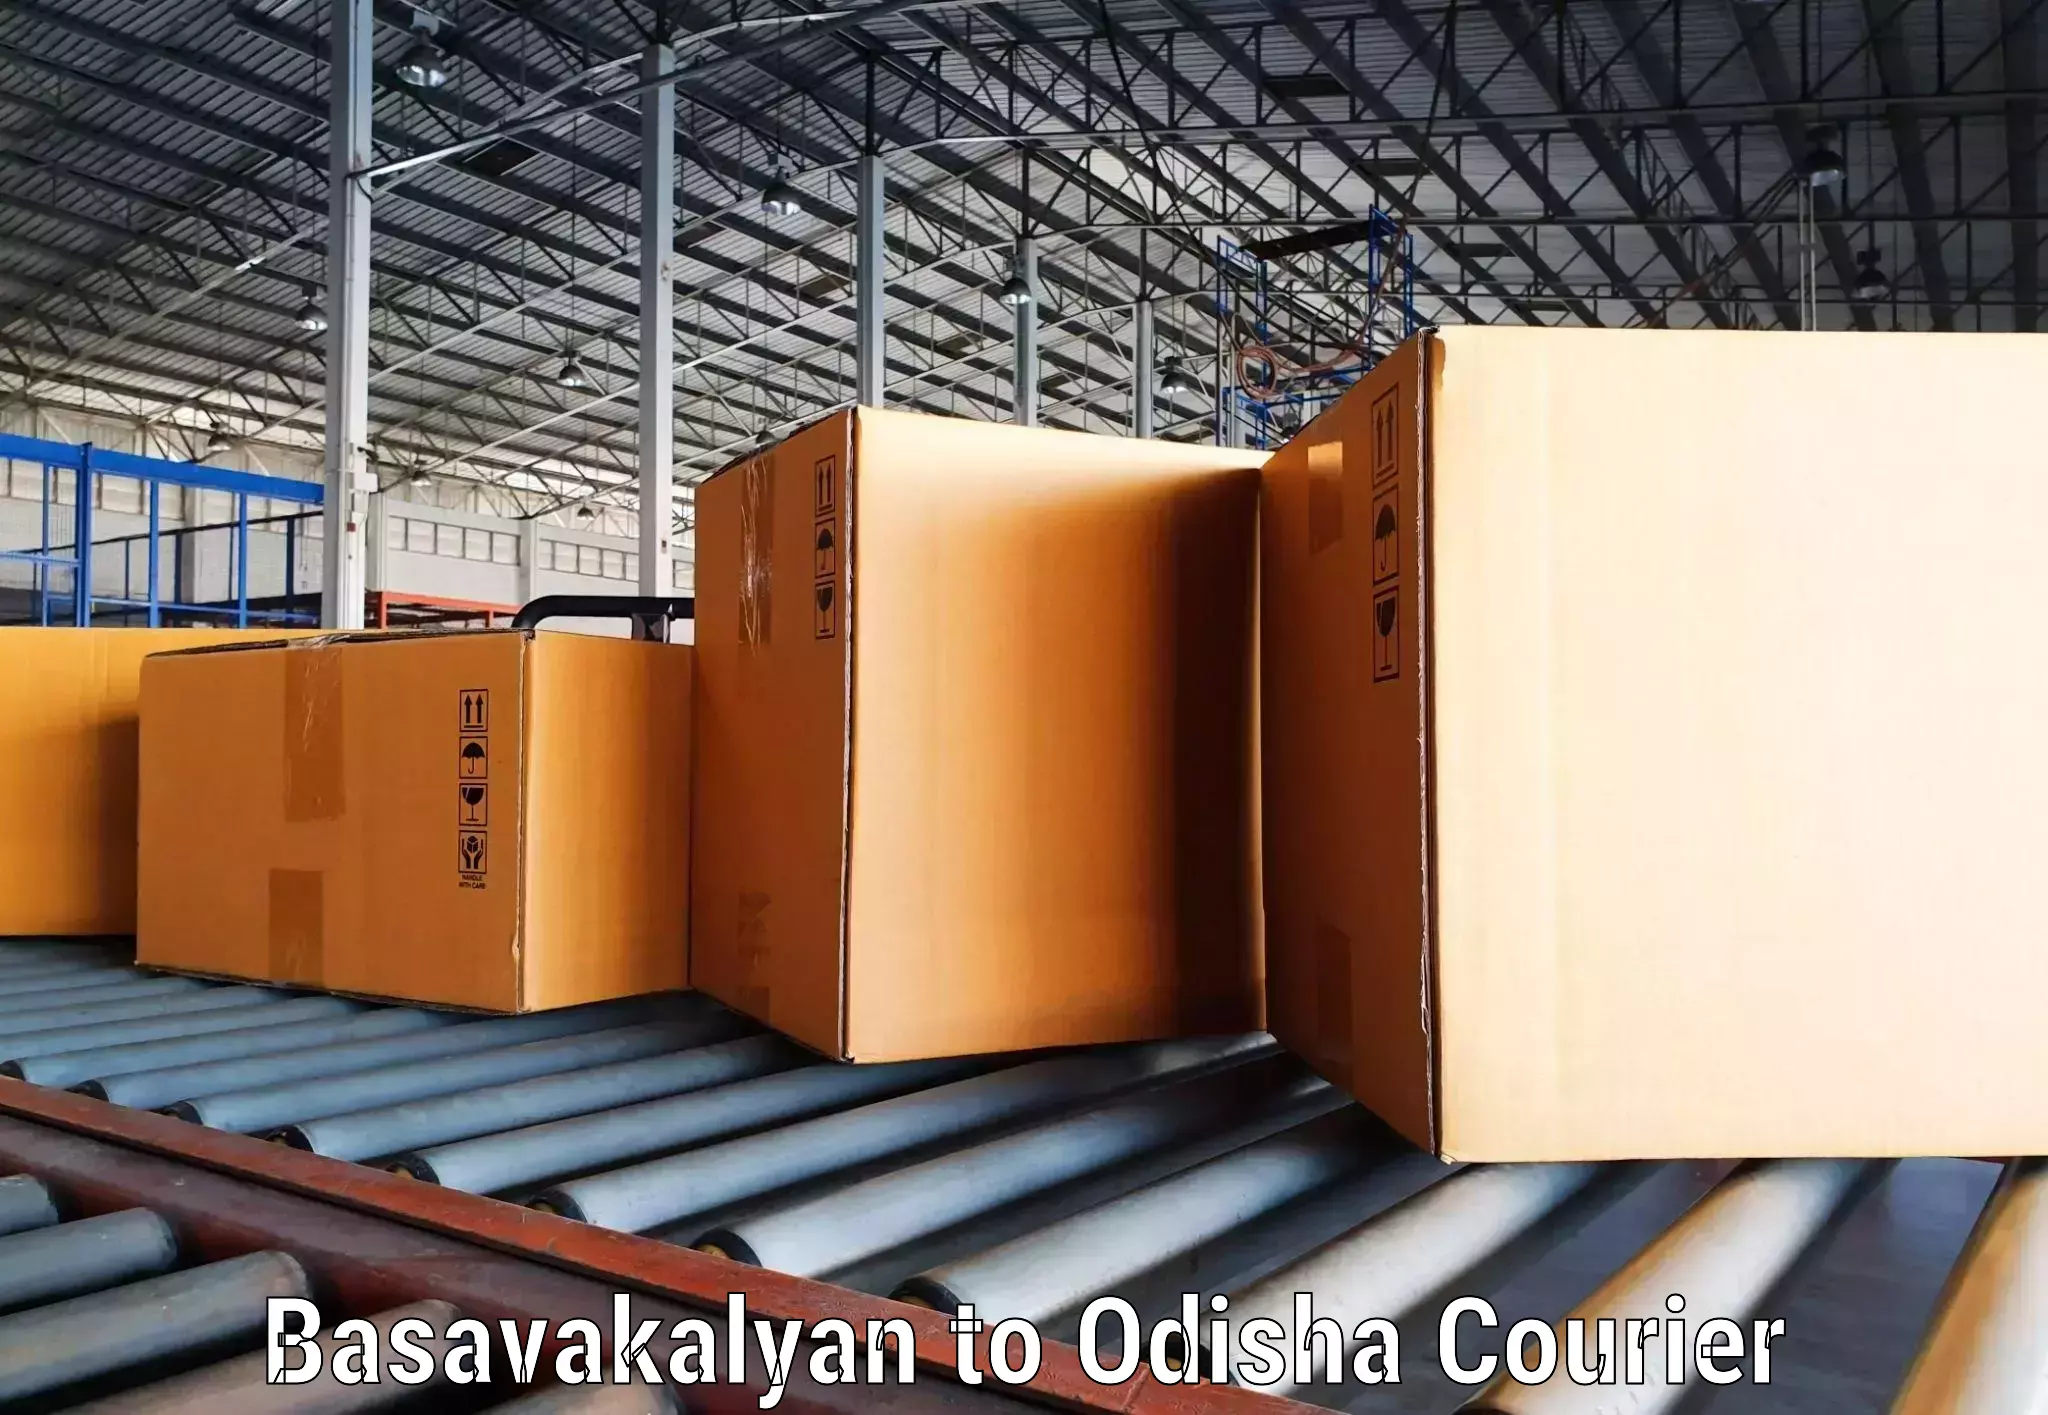 Professional courier handling in Basavakalyan to Dandisahi